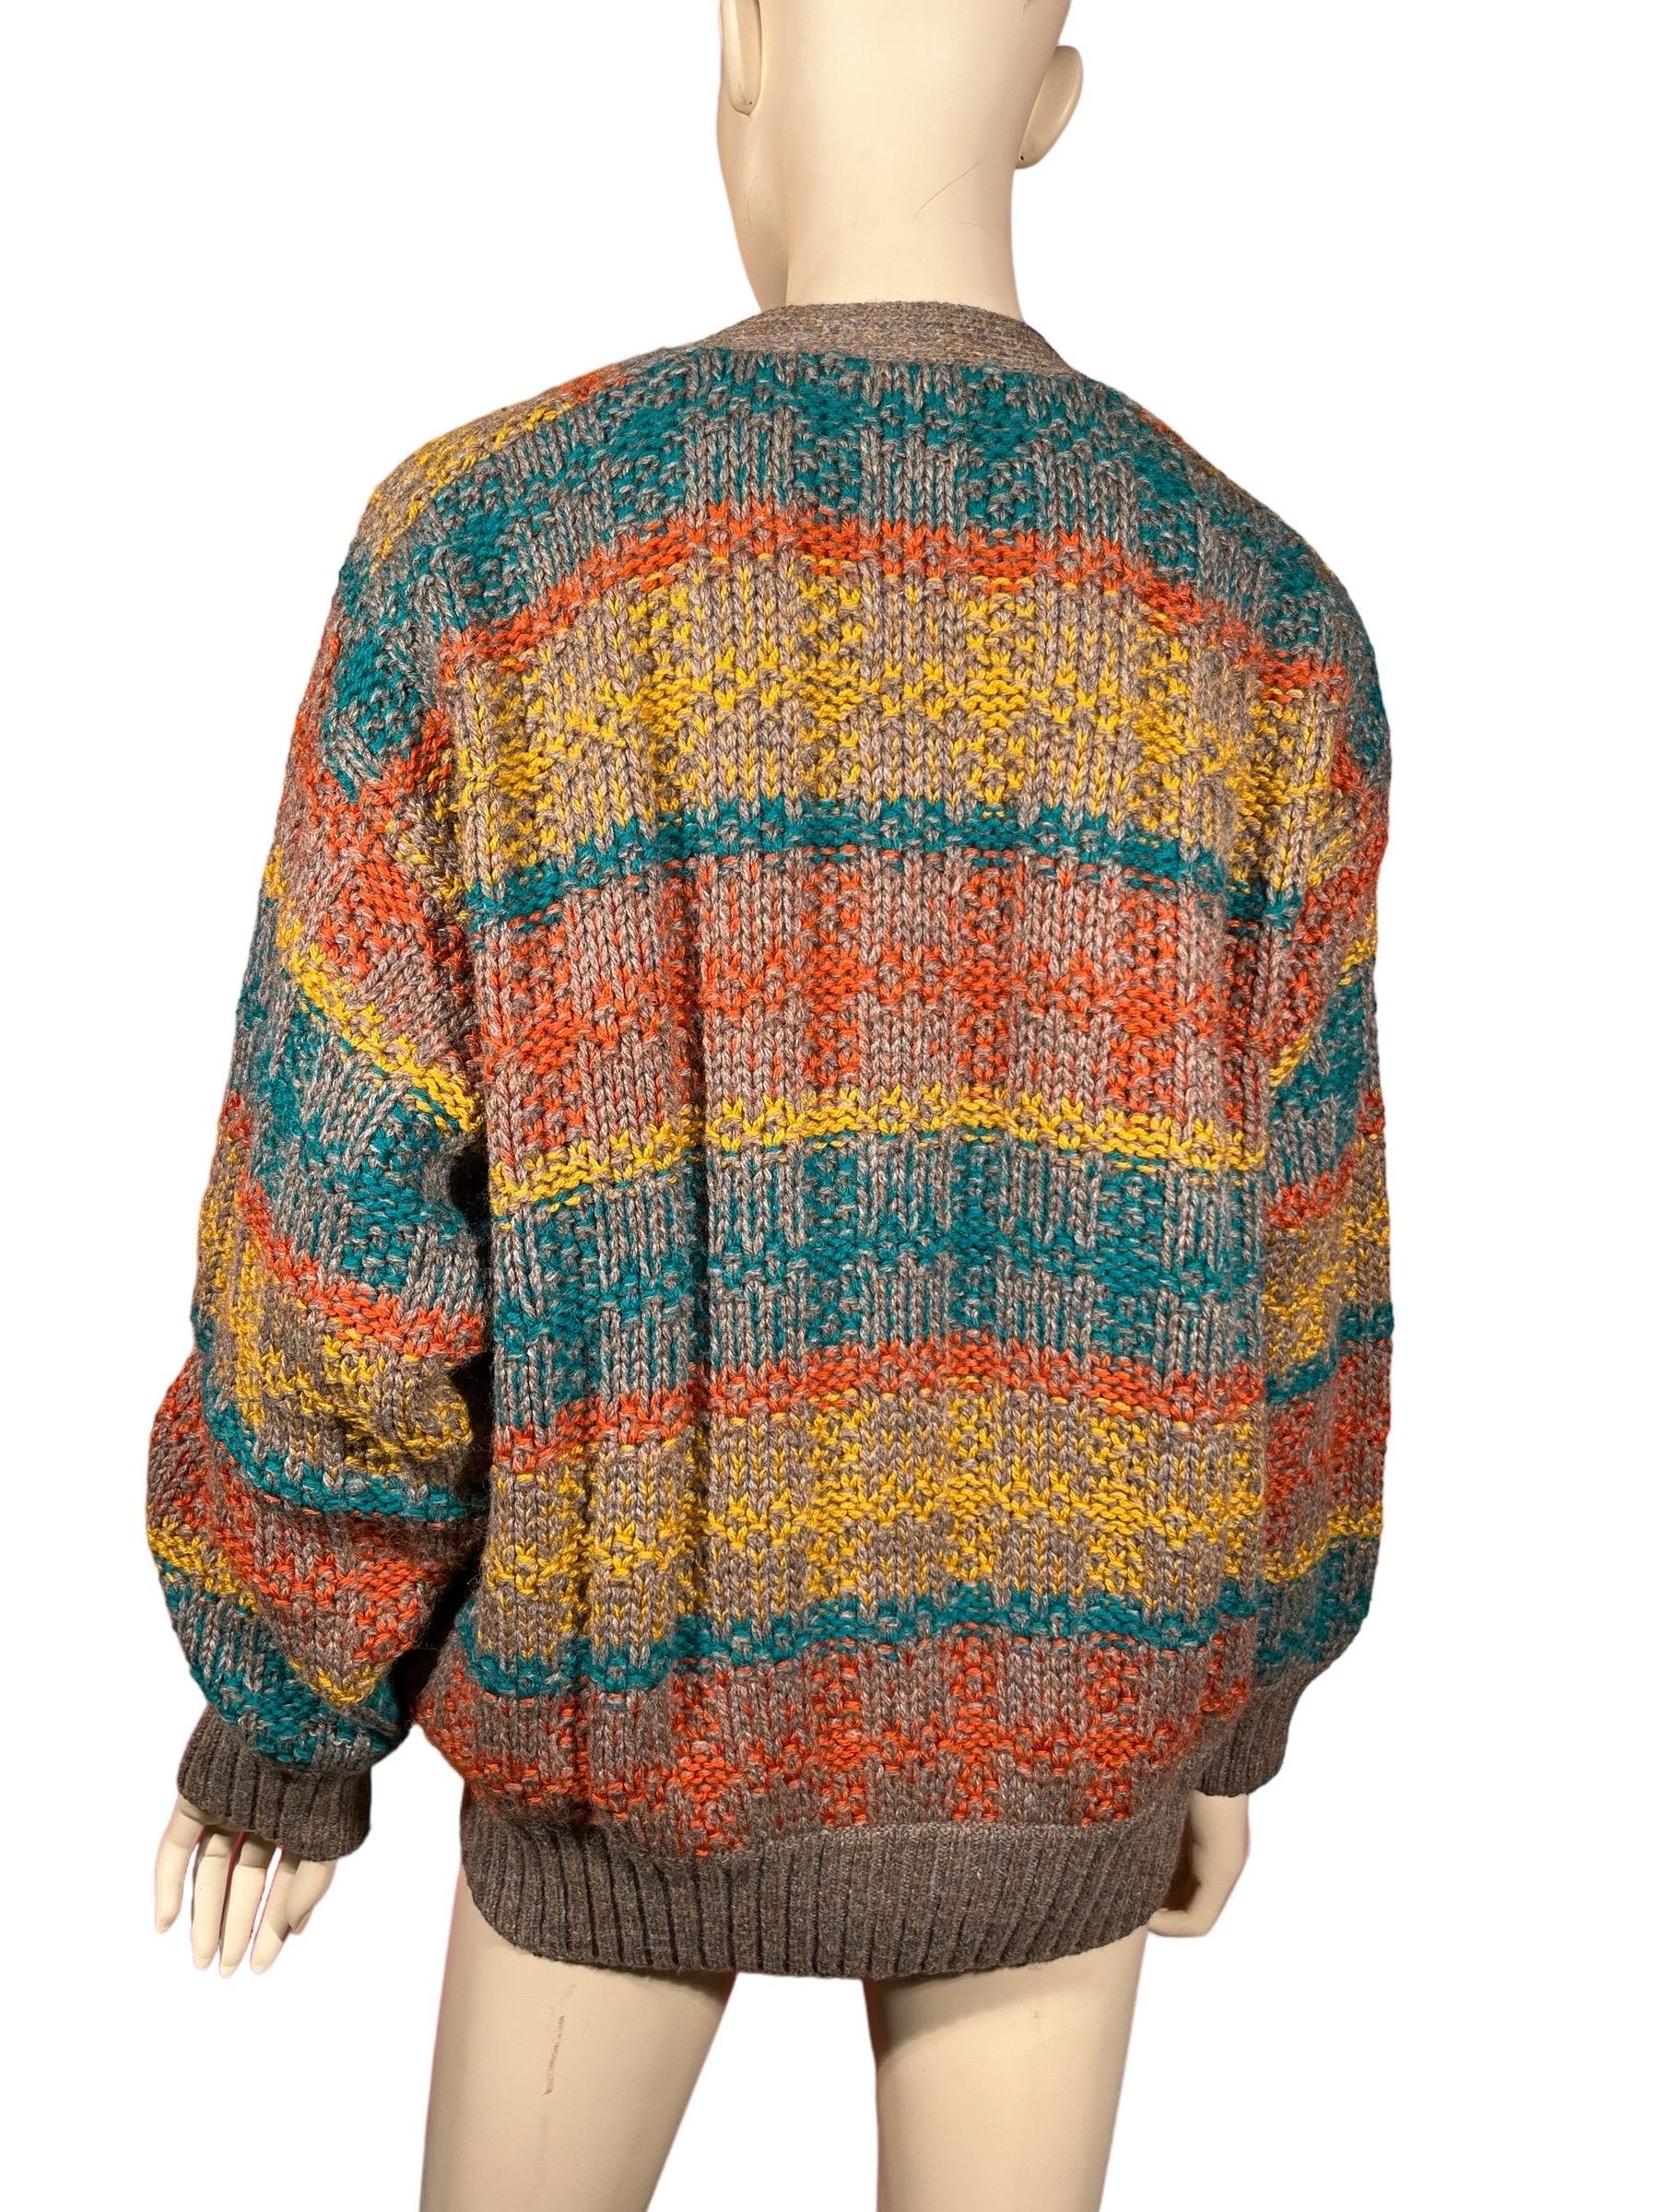 Women's or Men's Vintage 80's MISSONI SPORT Striped Wool Cardigan Sweater